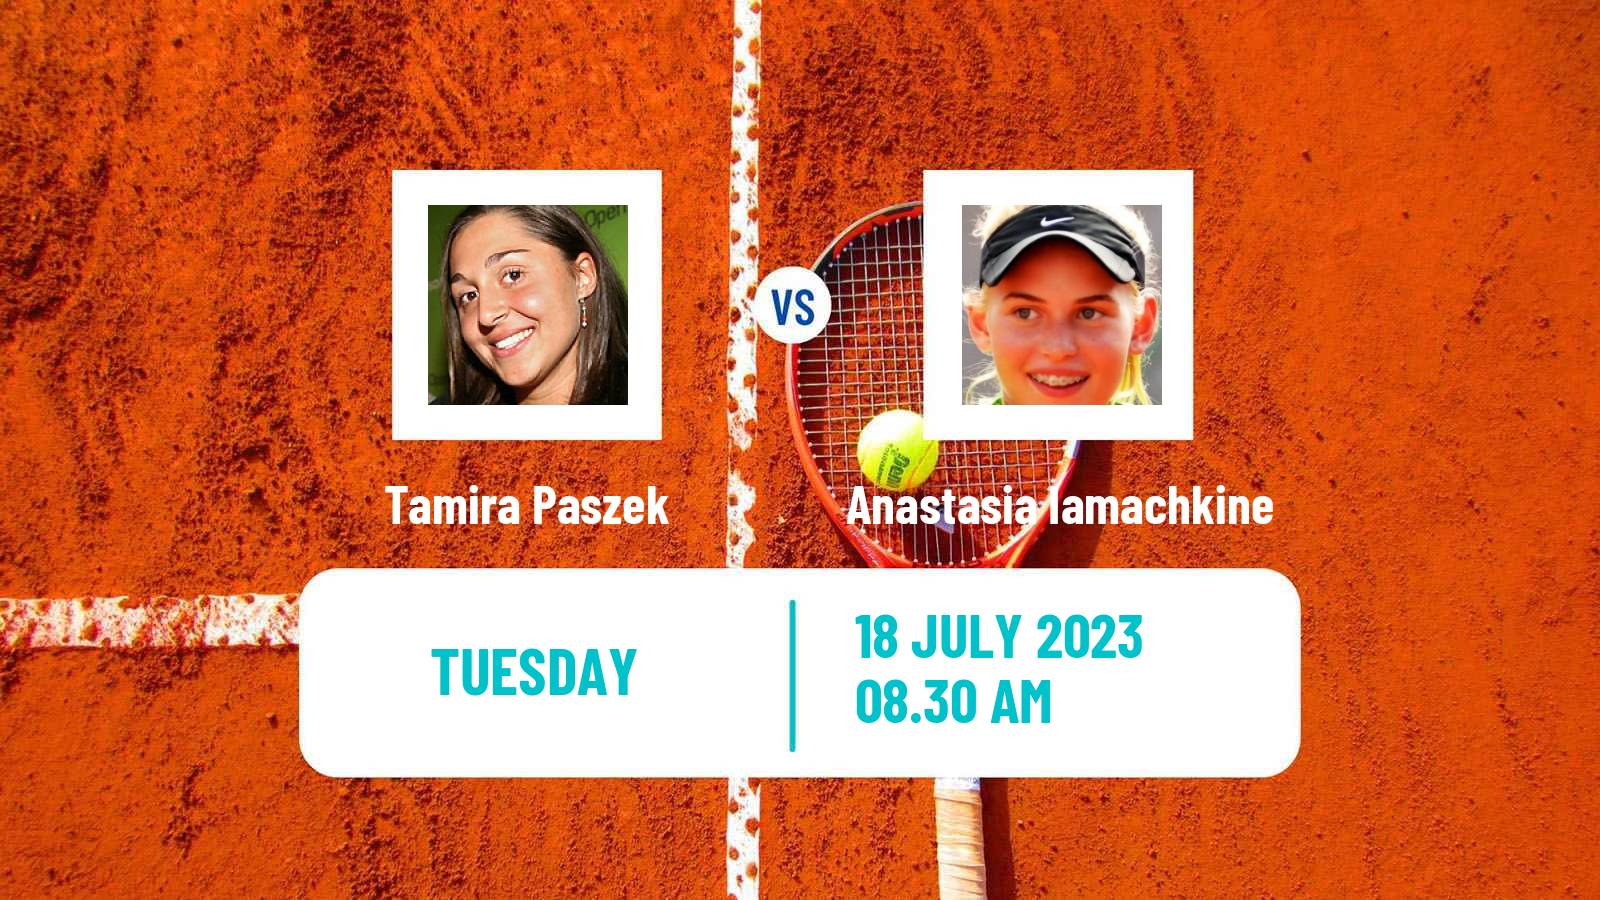 Tennis ITF W25 Roehampton Women Tamira Paszek - Anastasia Iamachkine